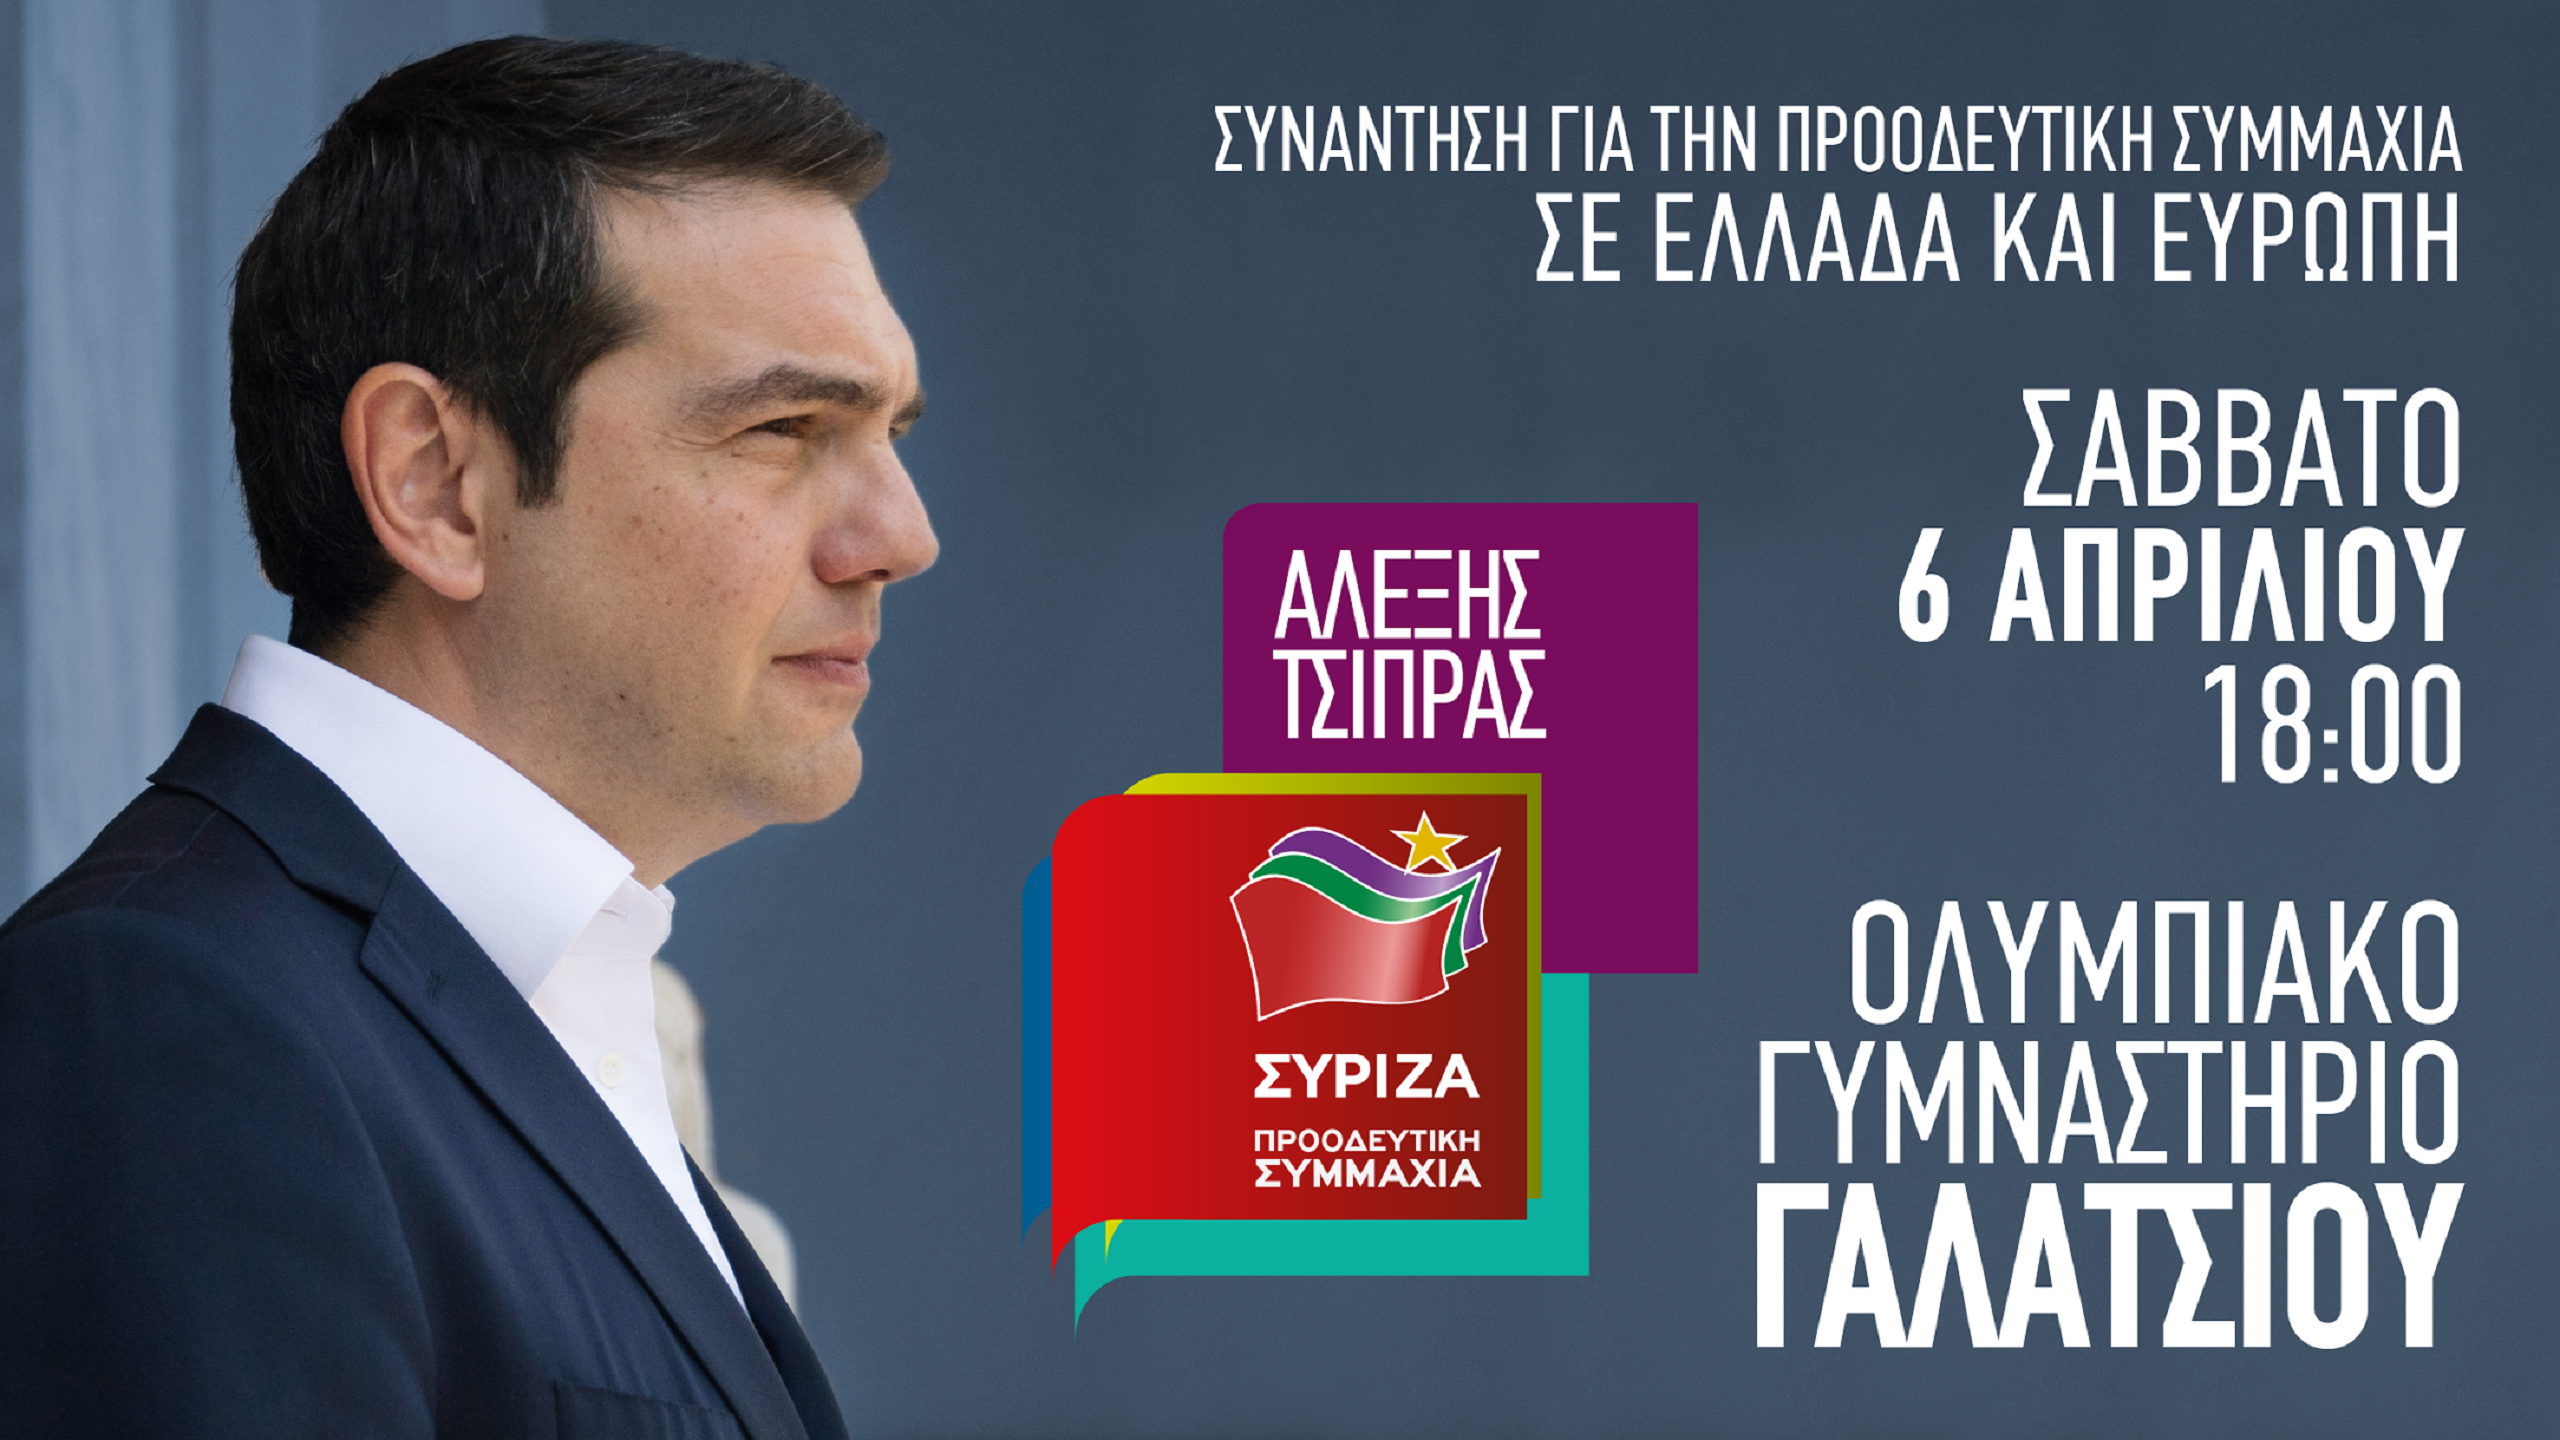 Πανελλαδική Συνάντηση για μια Μεγάλη Προοδευτική Συμμαχία σε Ελλάδα και Ευρώπη με ομιλητή τον Α. Τσίπρα